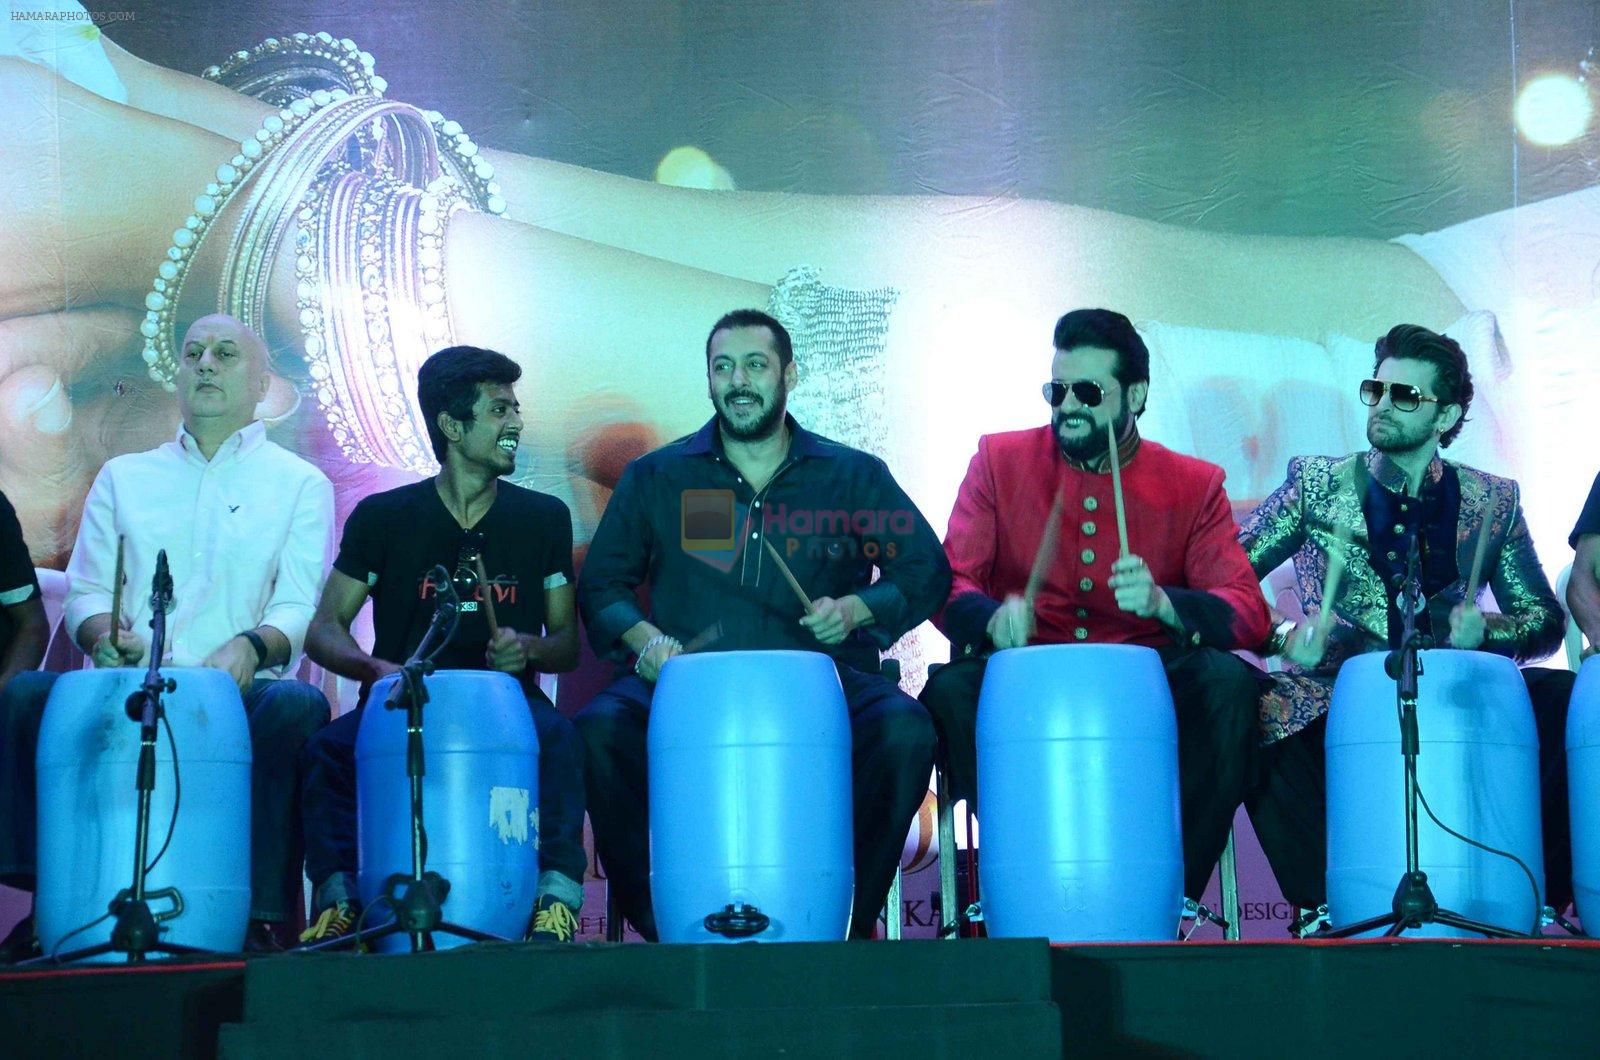 Neil Mukesh, Anupam Kher, Salman Khan, Armaan Kohli at prem ratan dhan payo dharavi Band on 11th Nov 2015